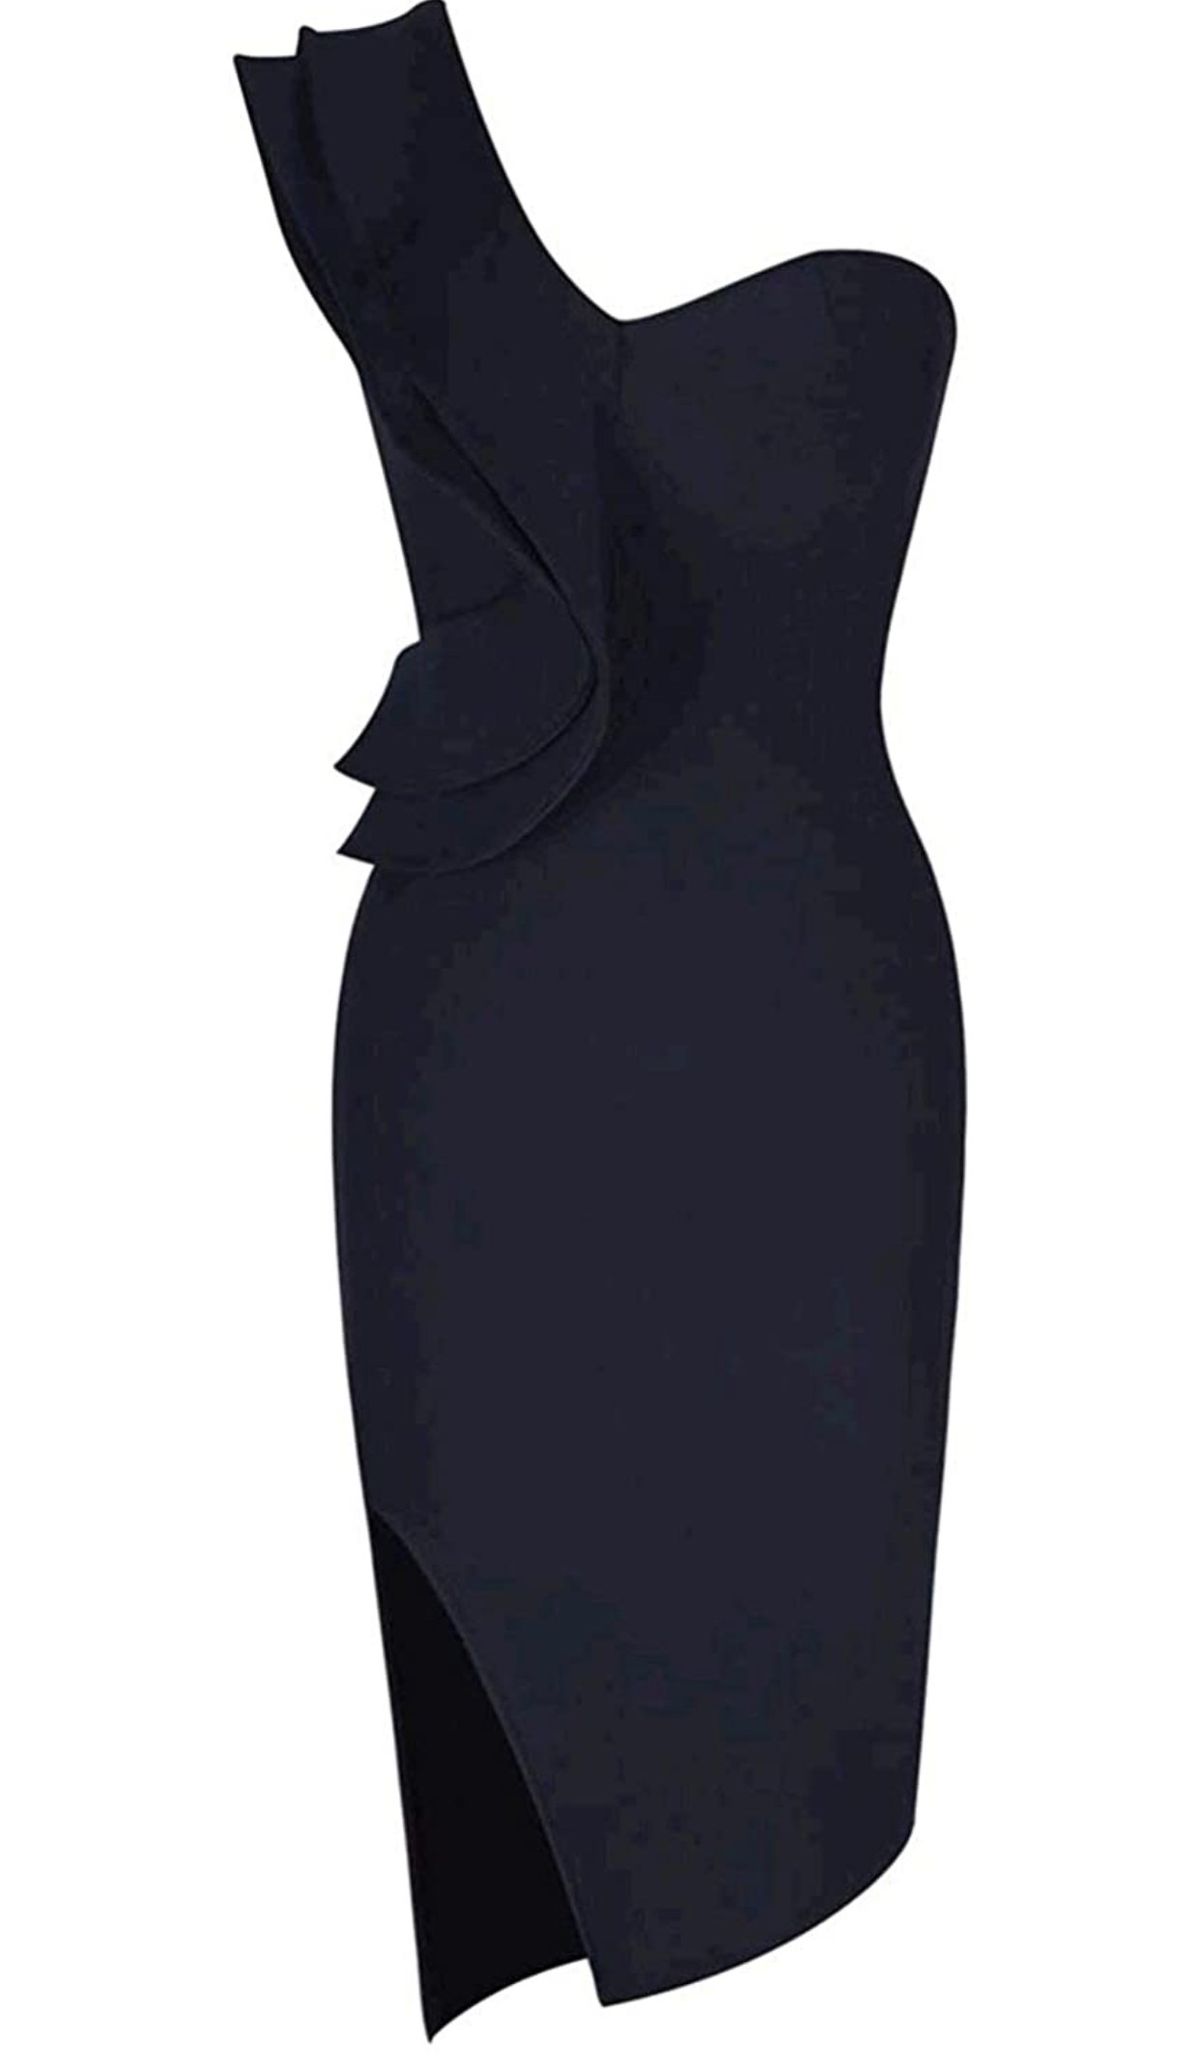 Size 4 One Shoulder Black Side Slit Dress on Queenly